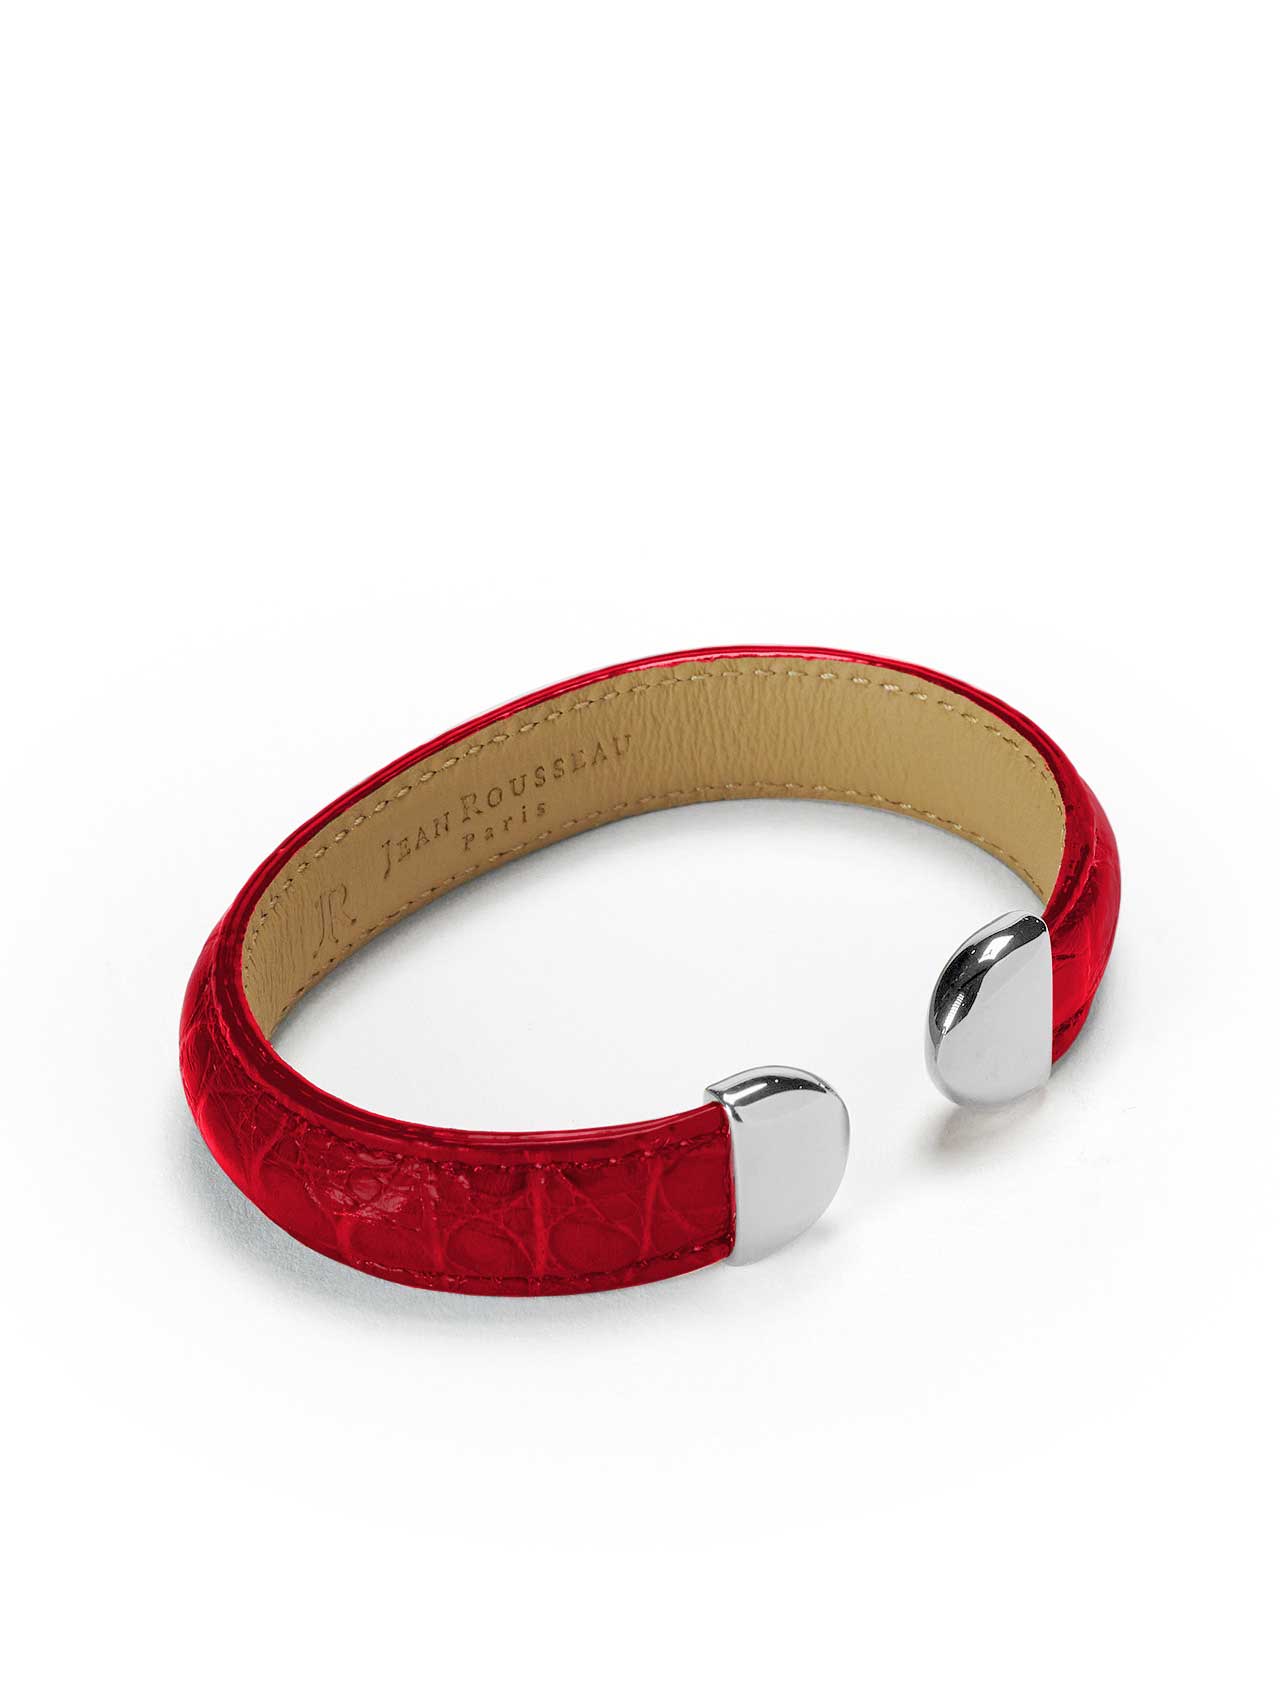 bracelet red leather jean rousseau